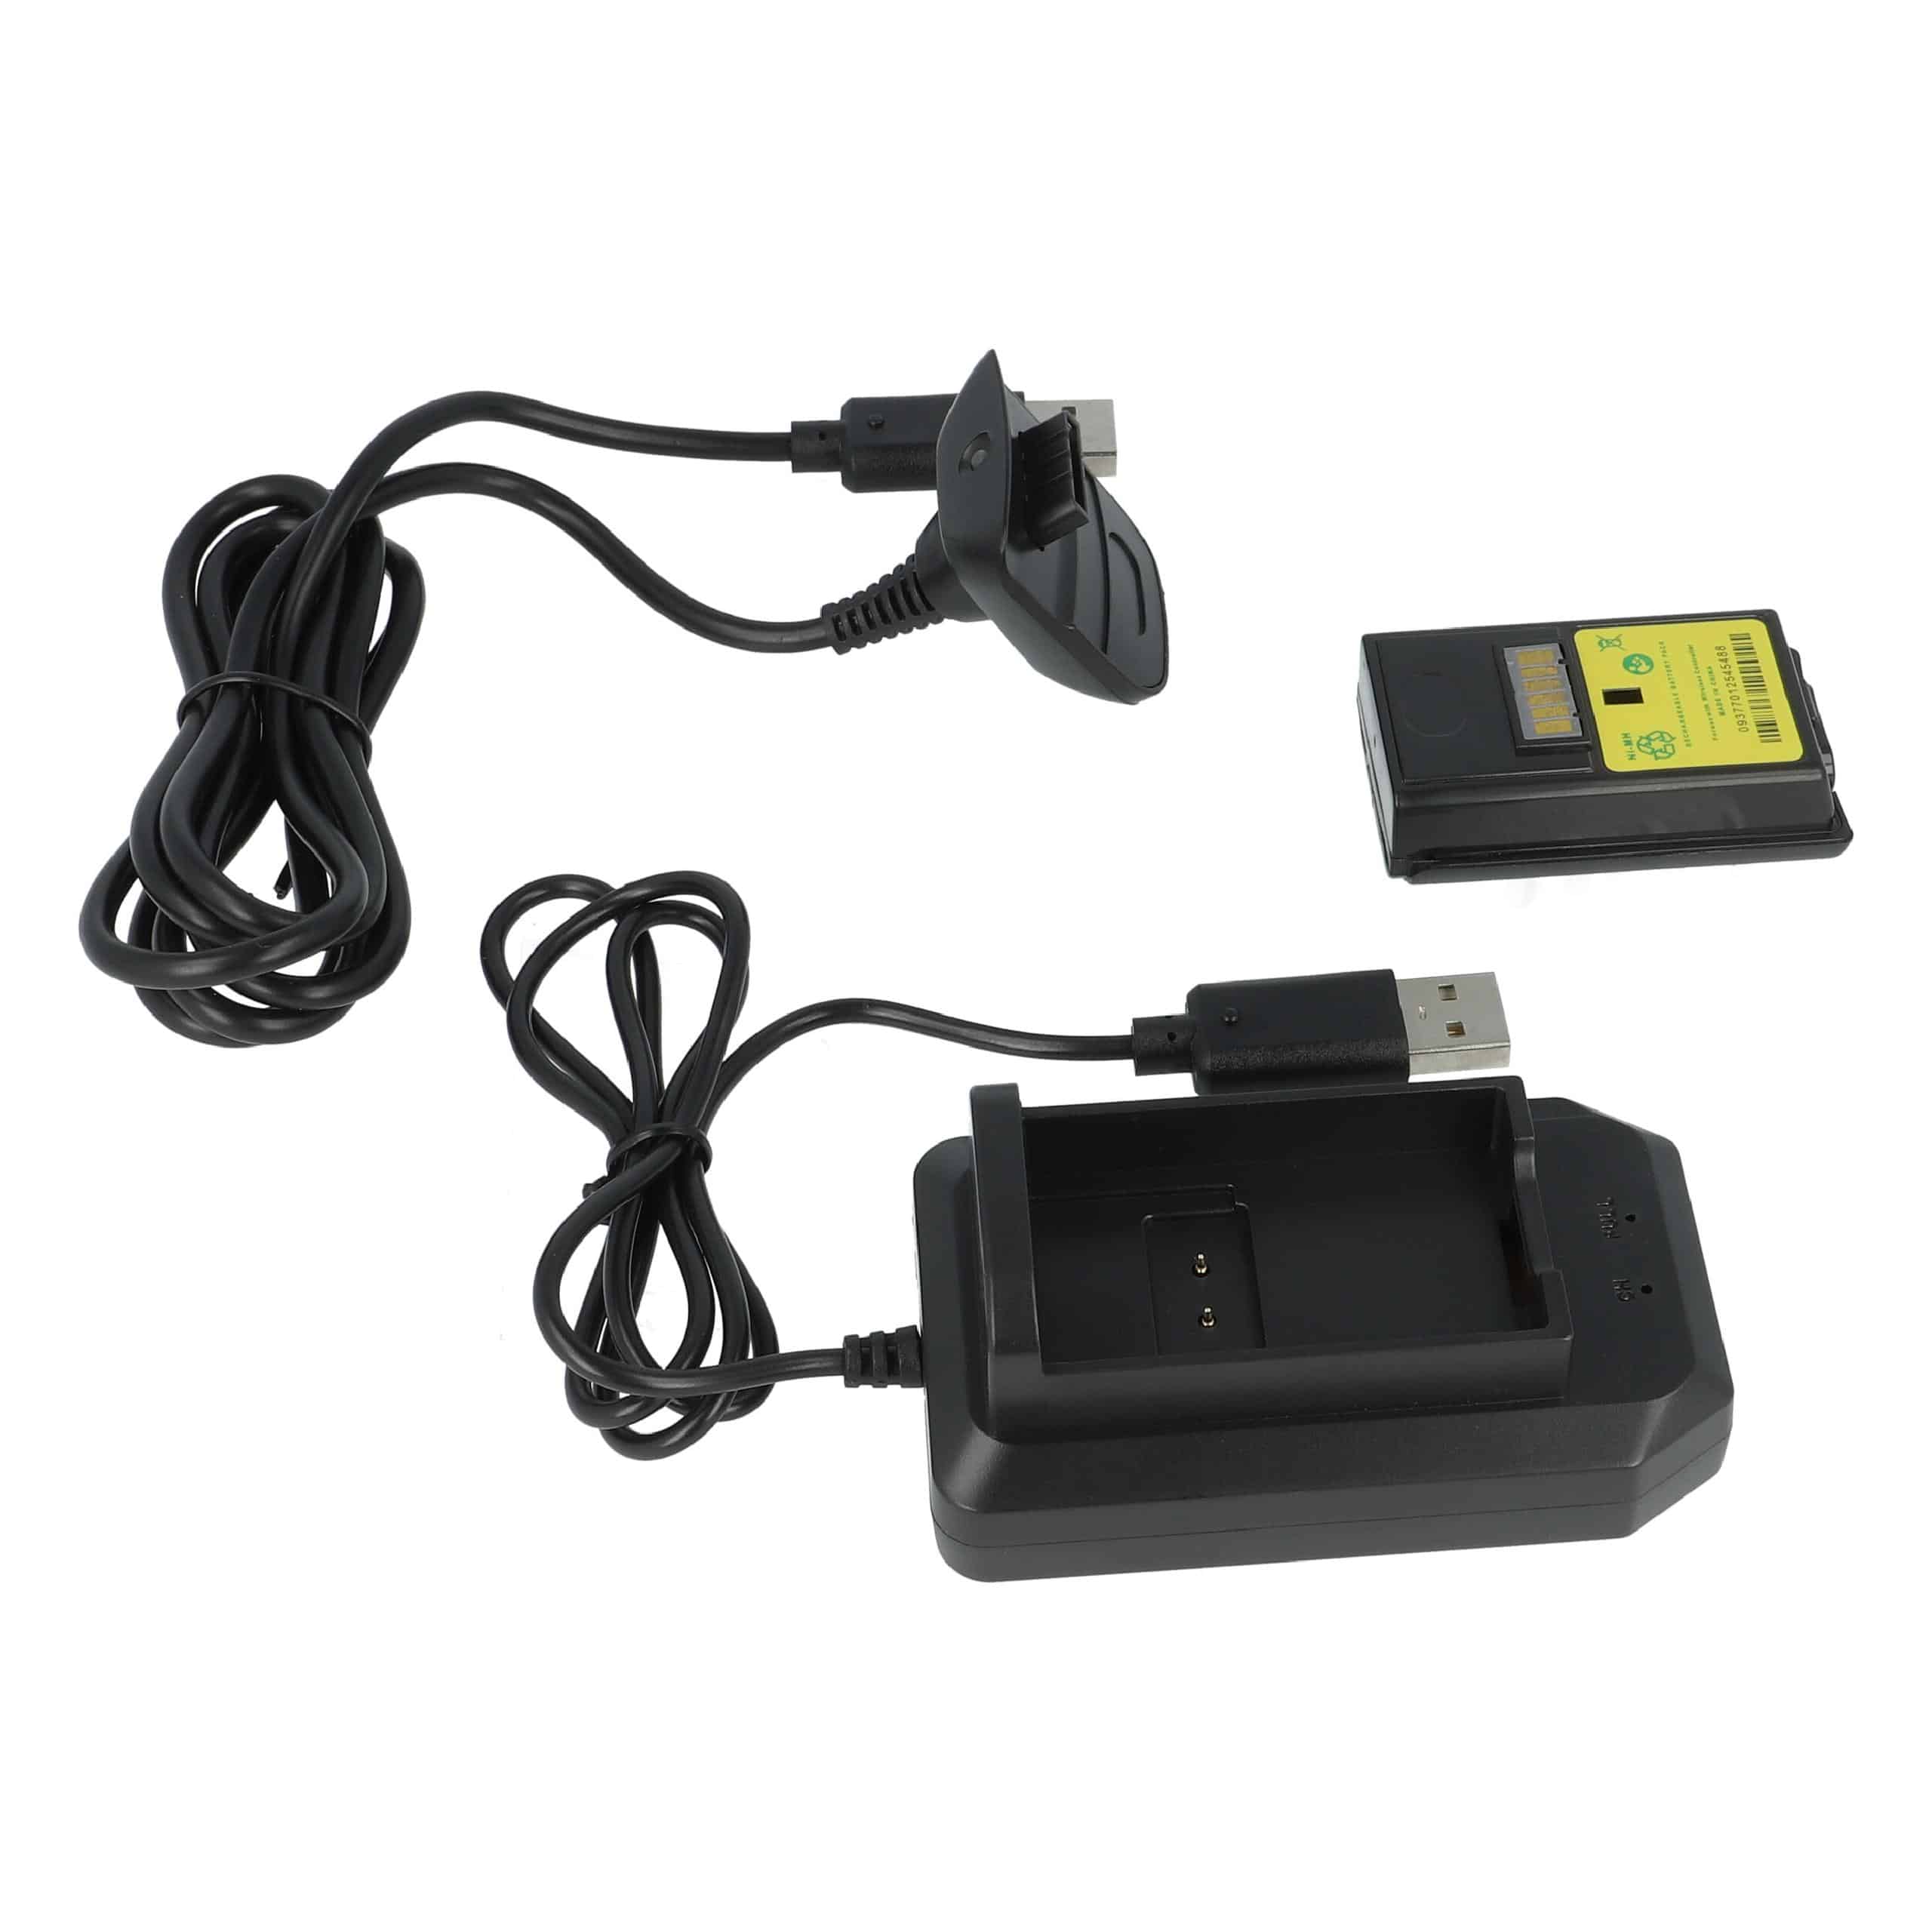 vhbw Kit Play & Charge - 1x chargeur, 1x câble d'alimentation, 1x batterie noir